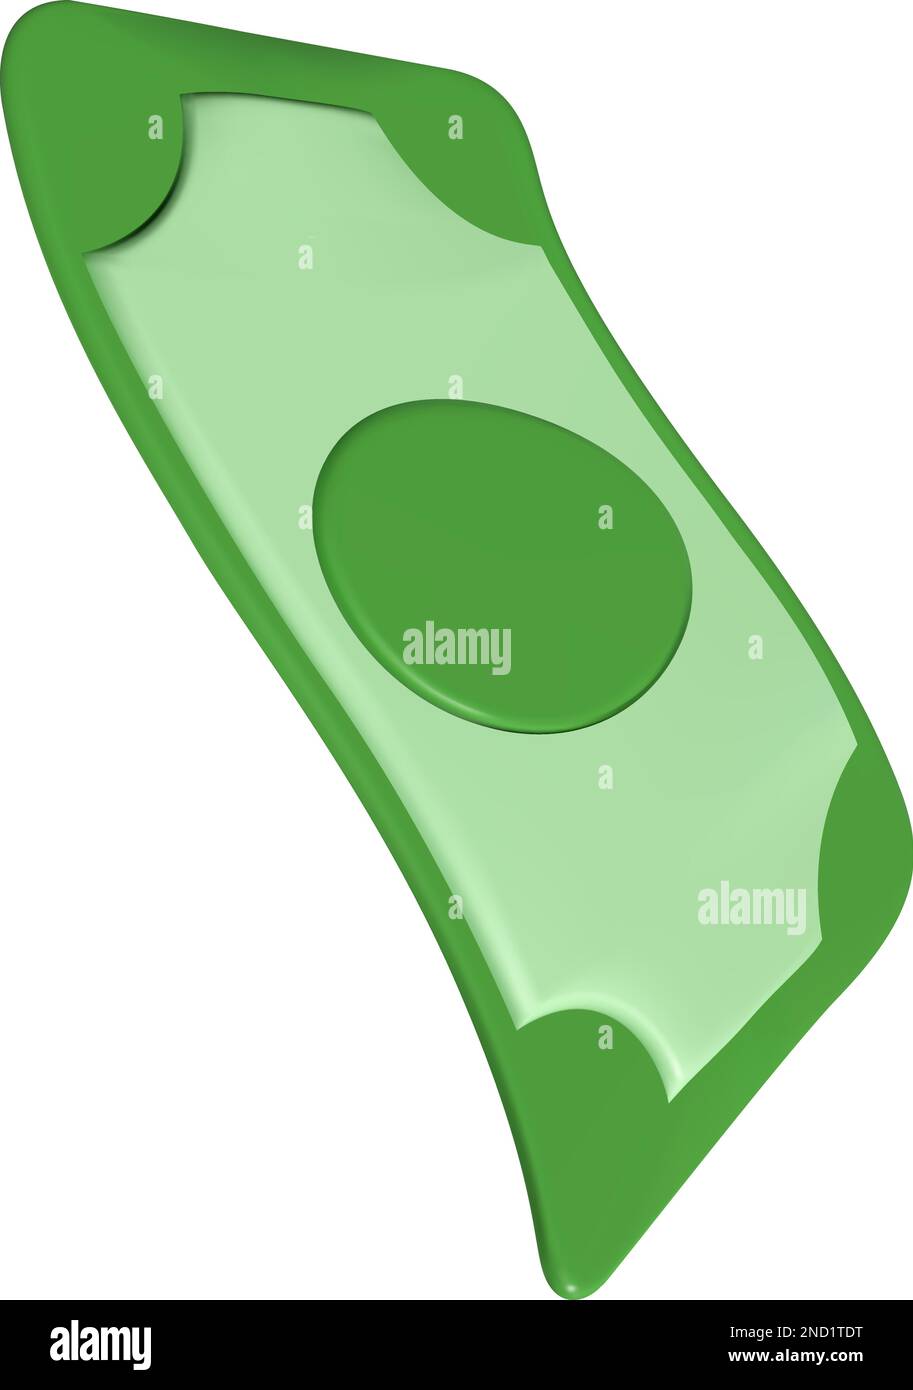 Fattura in dollari. Icona verde di moneta americana a 3D mesh. Banconota in stile cartoon. Illustrazione vettoriale isolata su sfondo trasparente Illustrazione Vettoriale